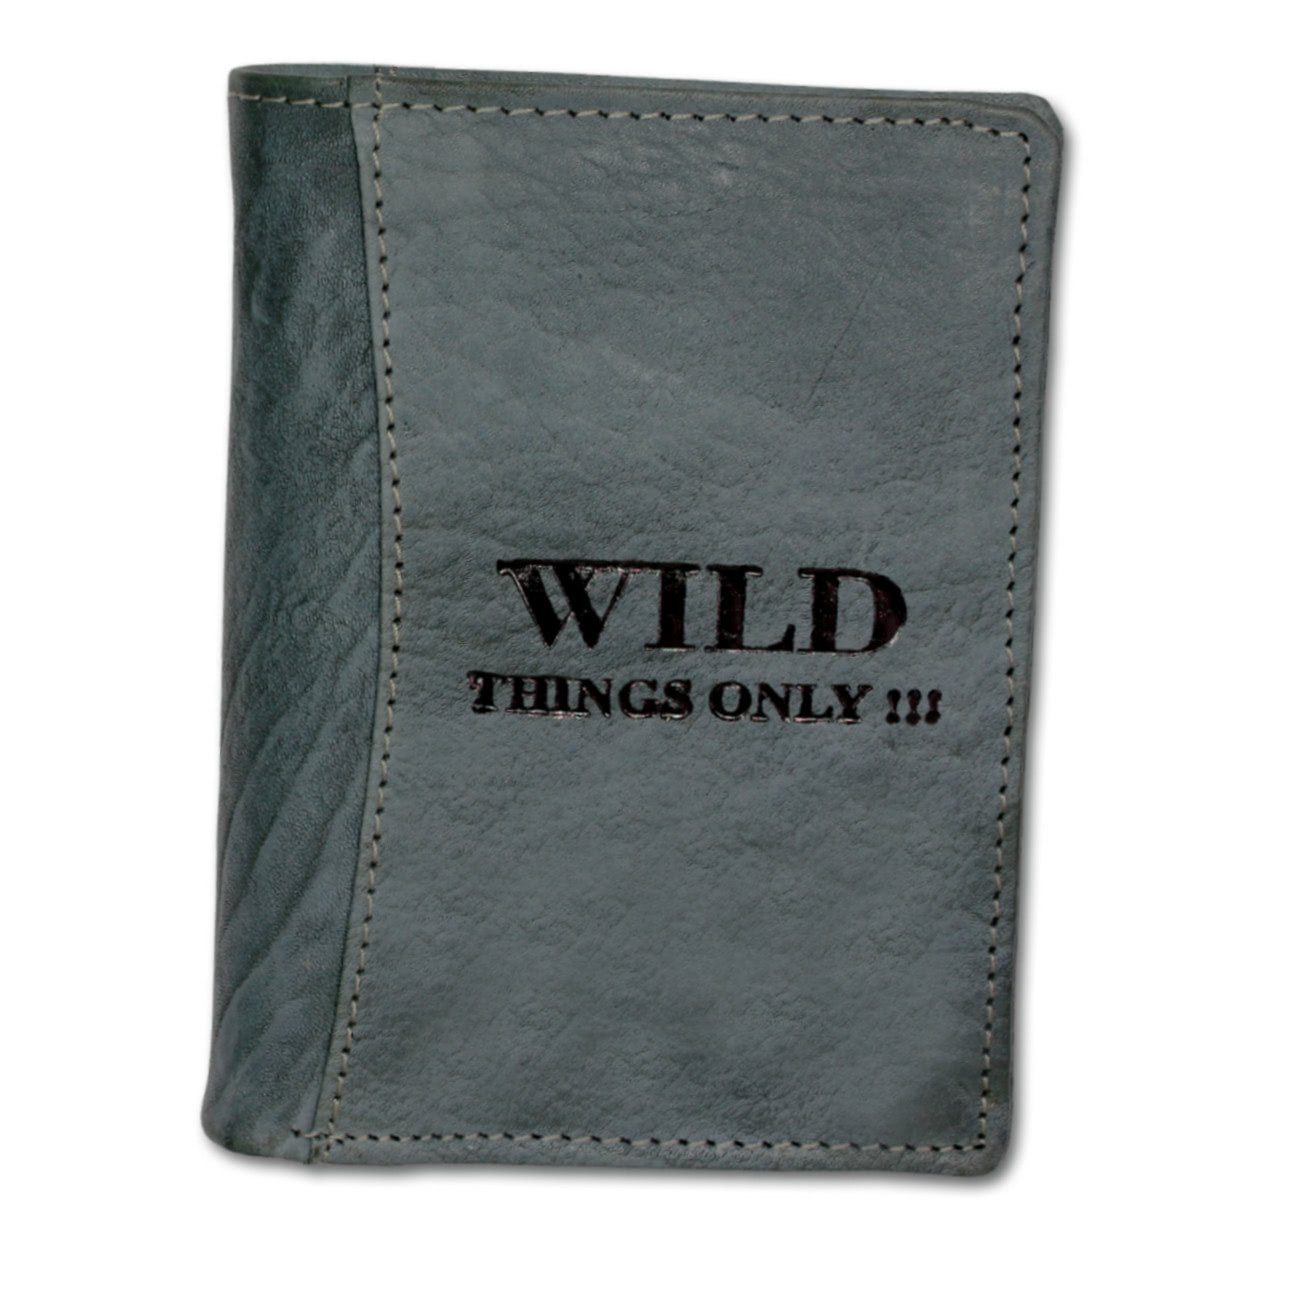 Wild Things Only !!! Geldbörse Wild Things Only Unisex Brieftasche (Portemonnaie, Portemonnaie), Herren, Damen Portemonnaie Echtleder Größe ca. 9,5cm, blau, grau